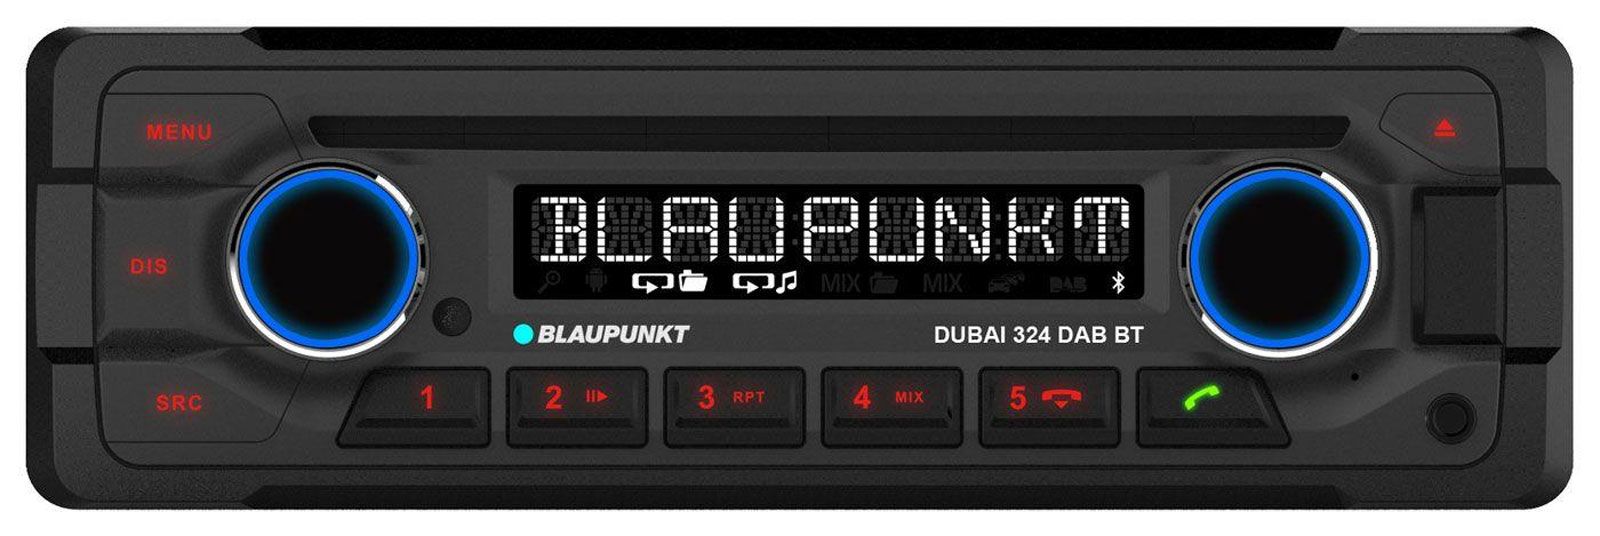 Blaupunkt Dubai 324 DAB BT 24 Volt - CD/MP3-Autoradio mit DAB / Bluetooth / USB / iPod / AUX-IN